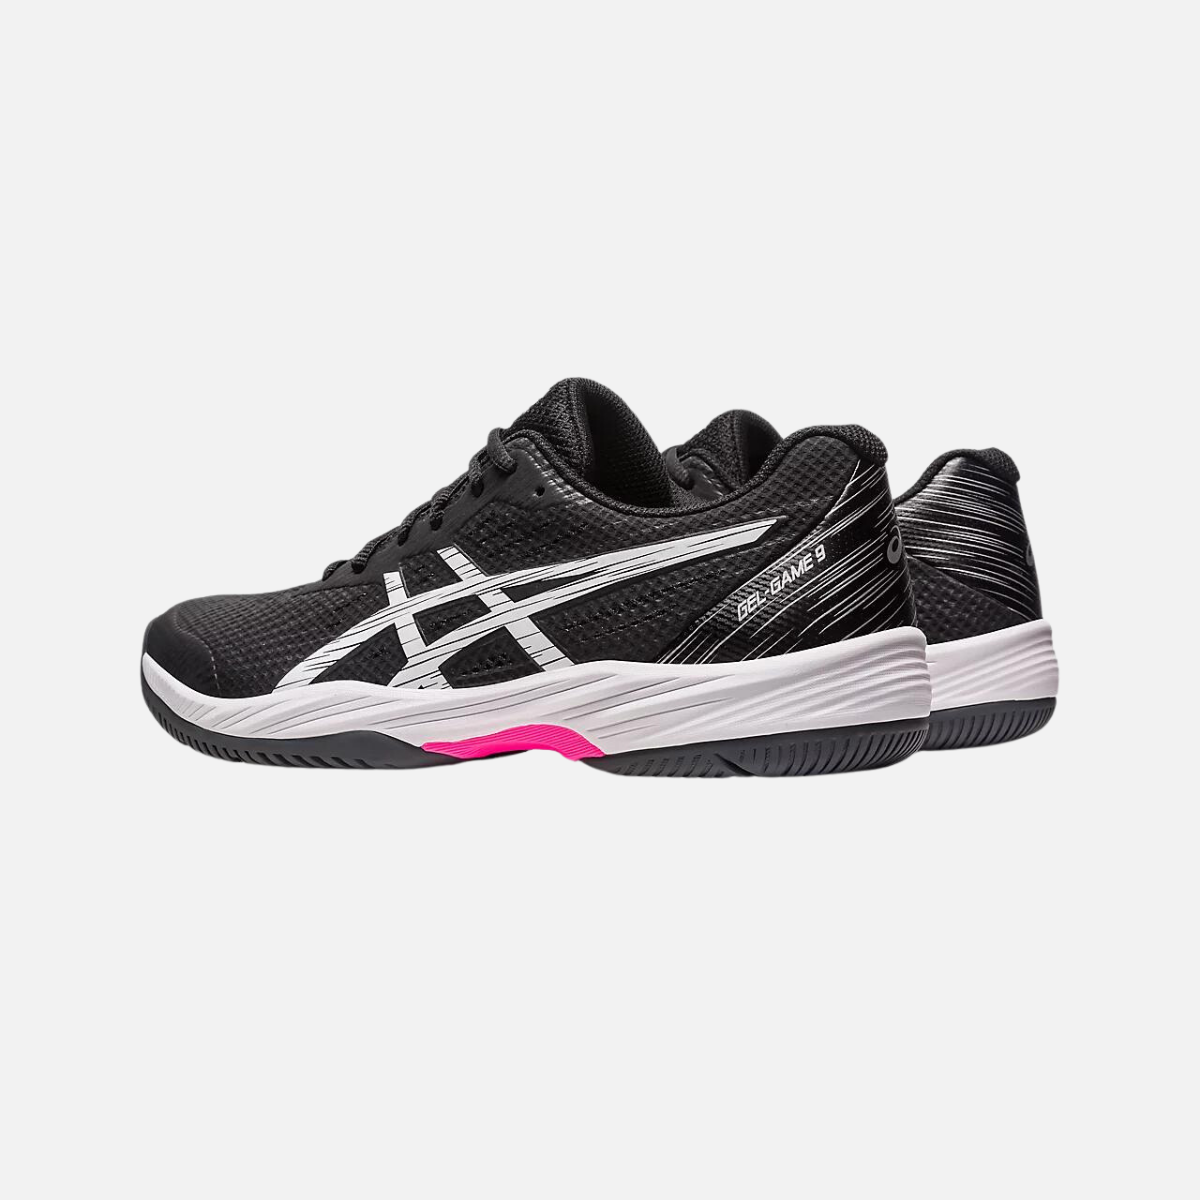 Asics GEL-GAME 9 Men's Tennis Shoes -Black/Hot Pink